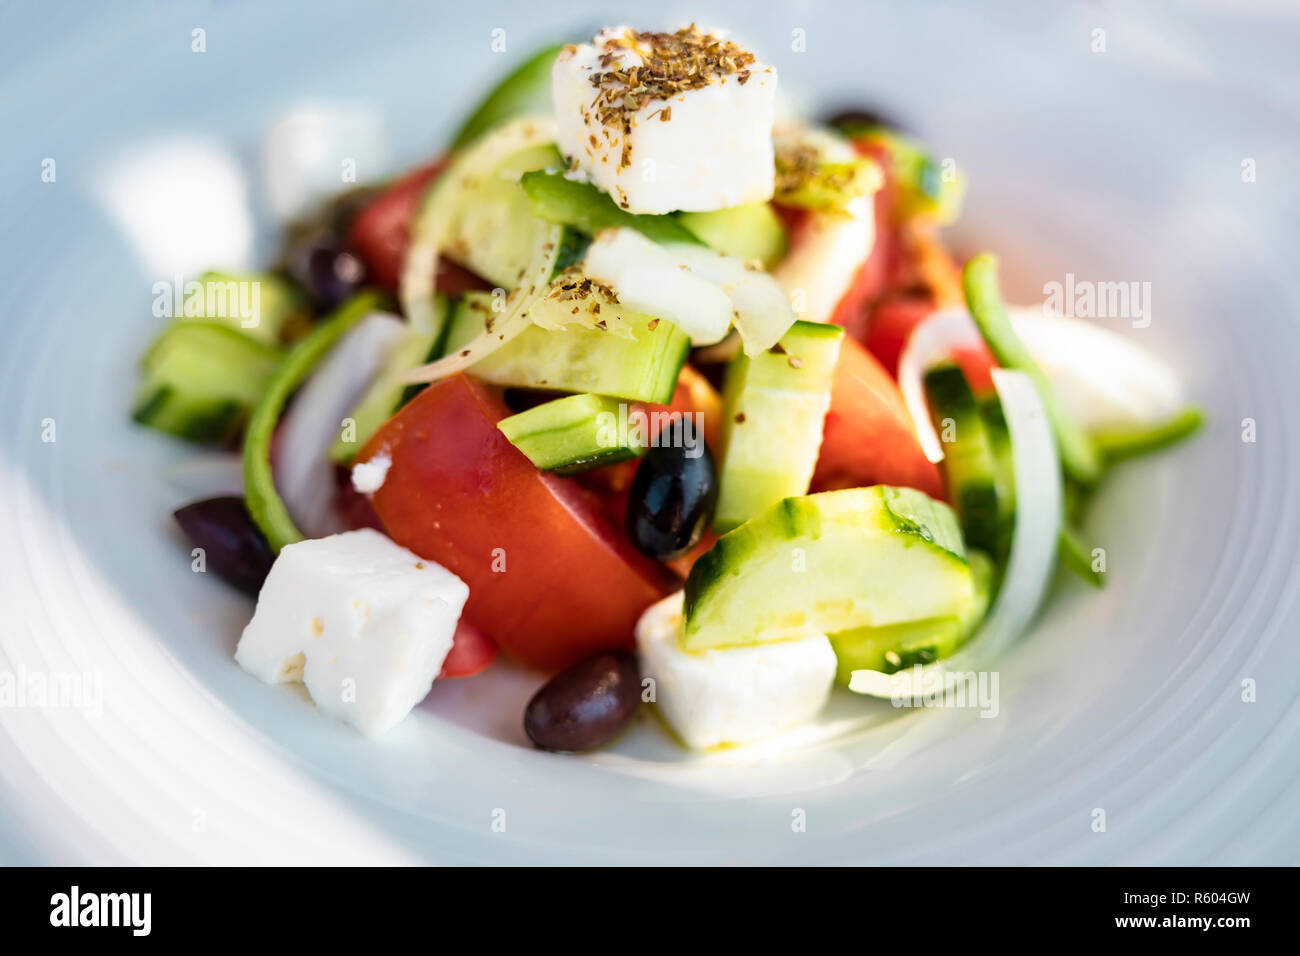 Nahaufnahme von einer Platte mit einem griechischen Salat aus Schichten von Tomaten und Gurken, Oliven, Würfeln Feta Käse und Kräutern. Stockfoto